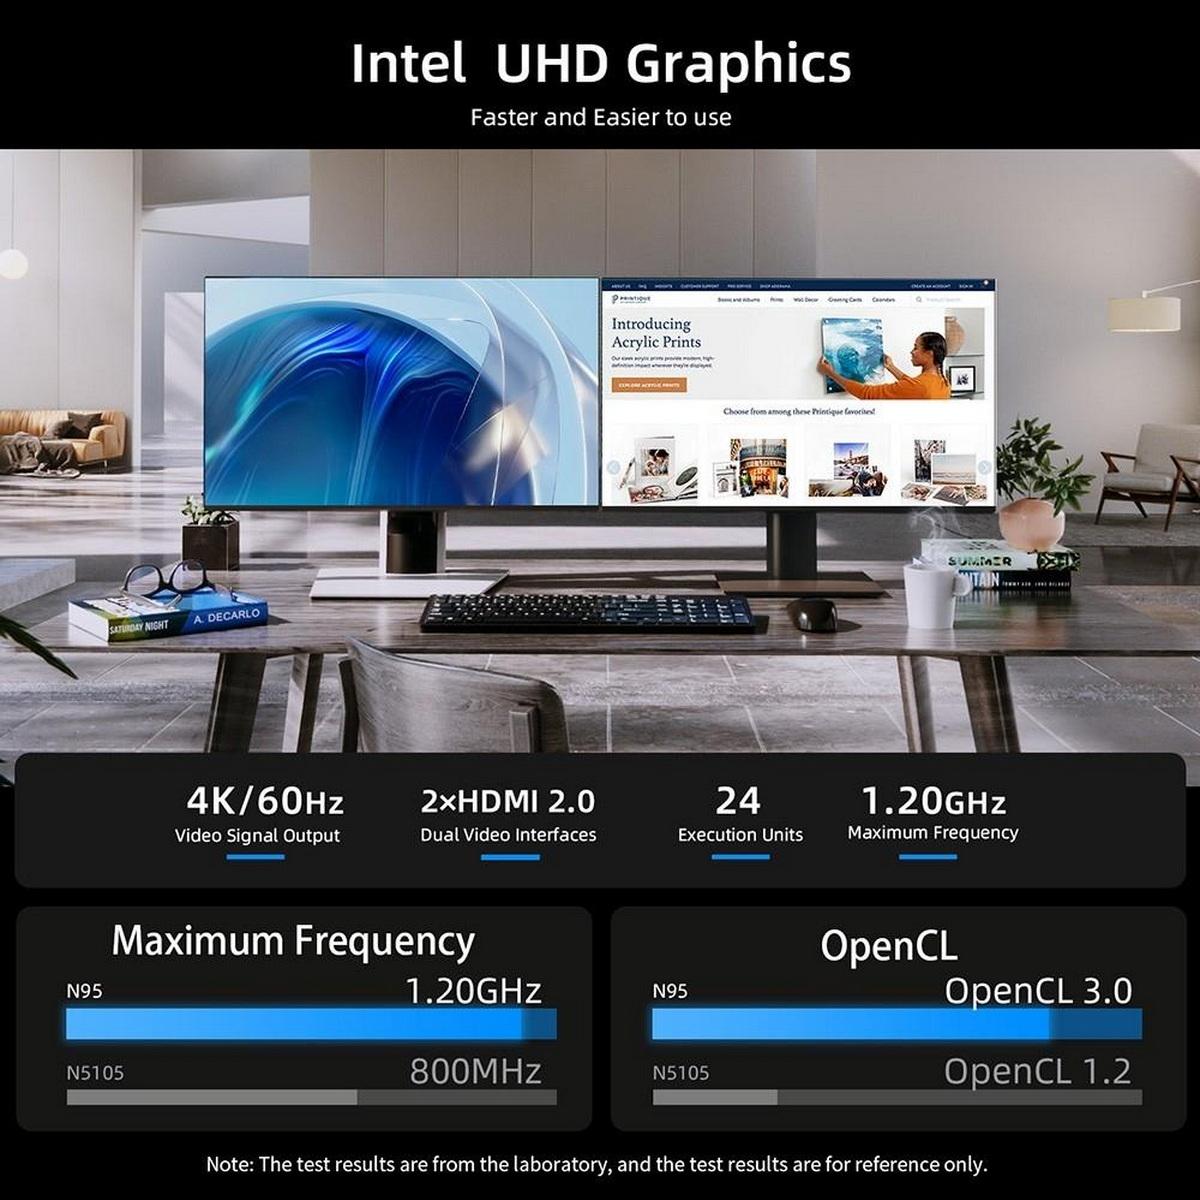 BMAX B4, Mini-PC, Intel® GB GB 16 SSD, 512 RAM, Graphics UHD